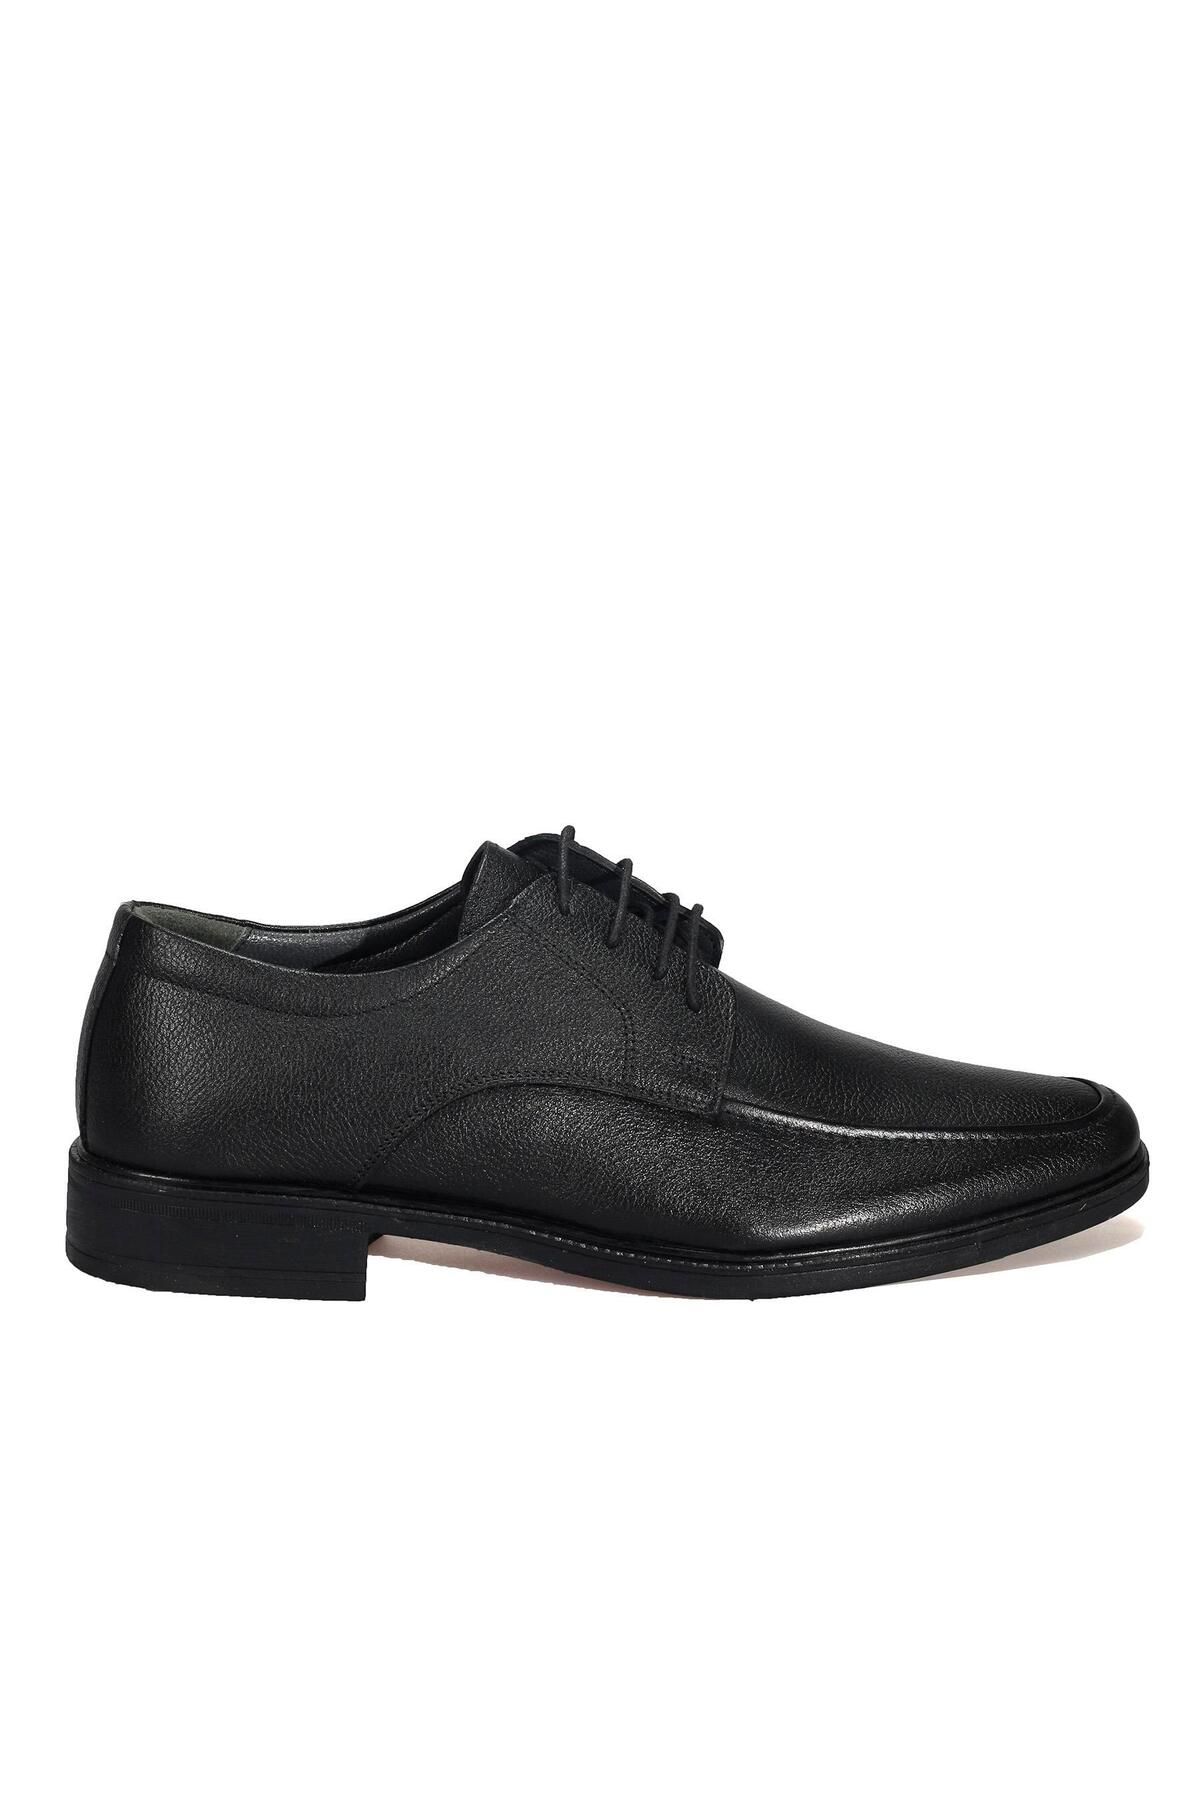 AREGA Bağcıklı Siyah Klasik Erkek Deri Ayakkabı